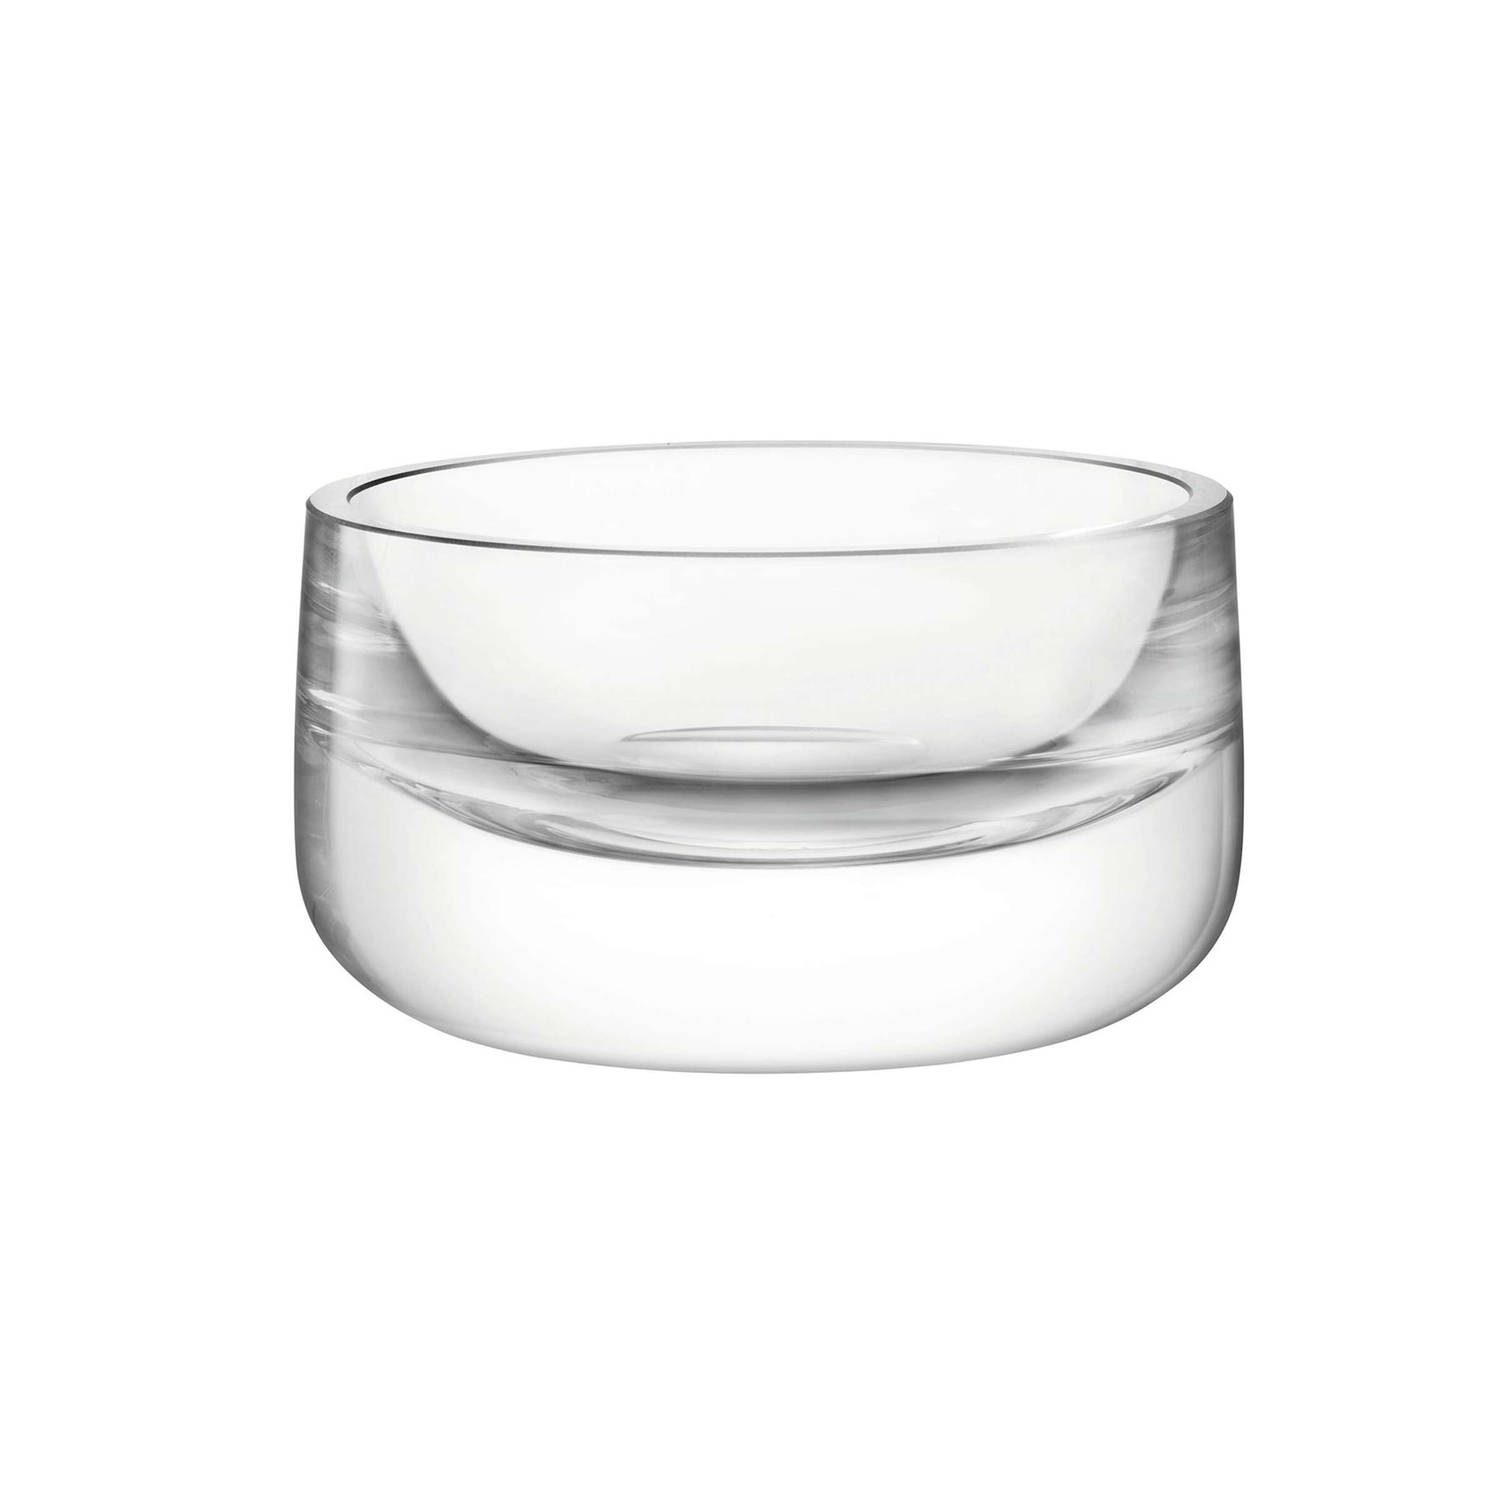 L.S.A. - Bar Culture Schaal voor Olijven ø 12 cm - Glas - Transparant